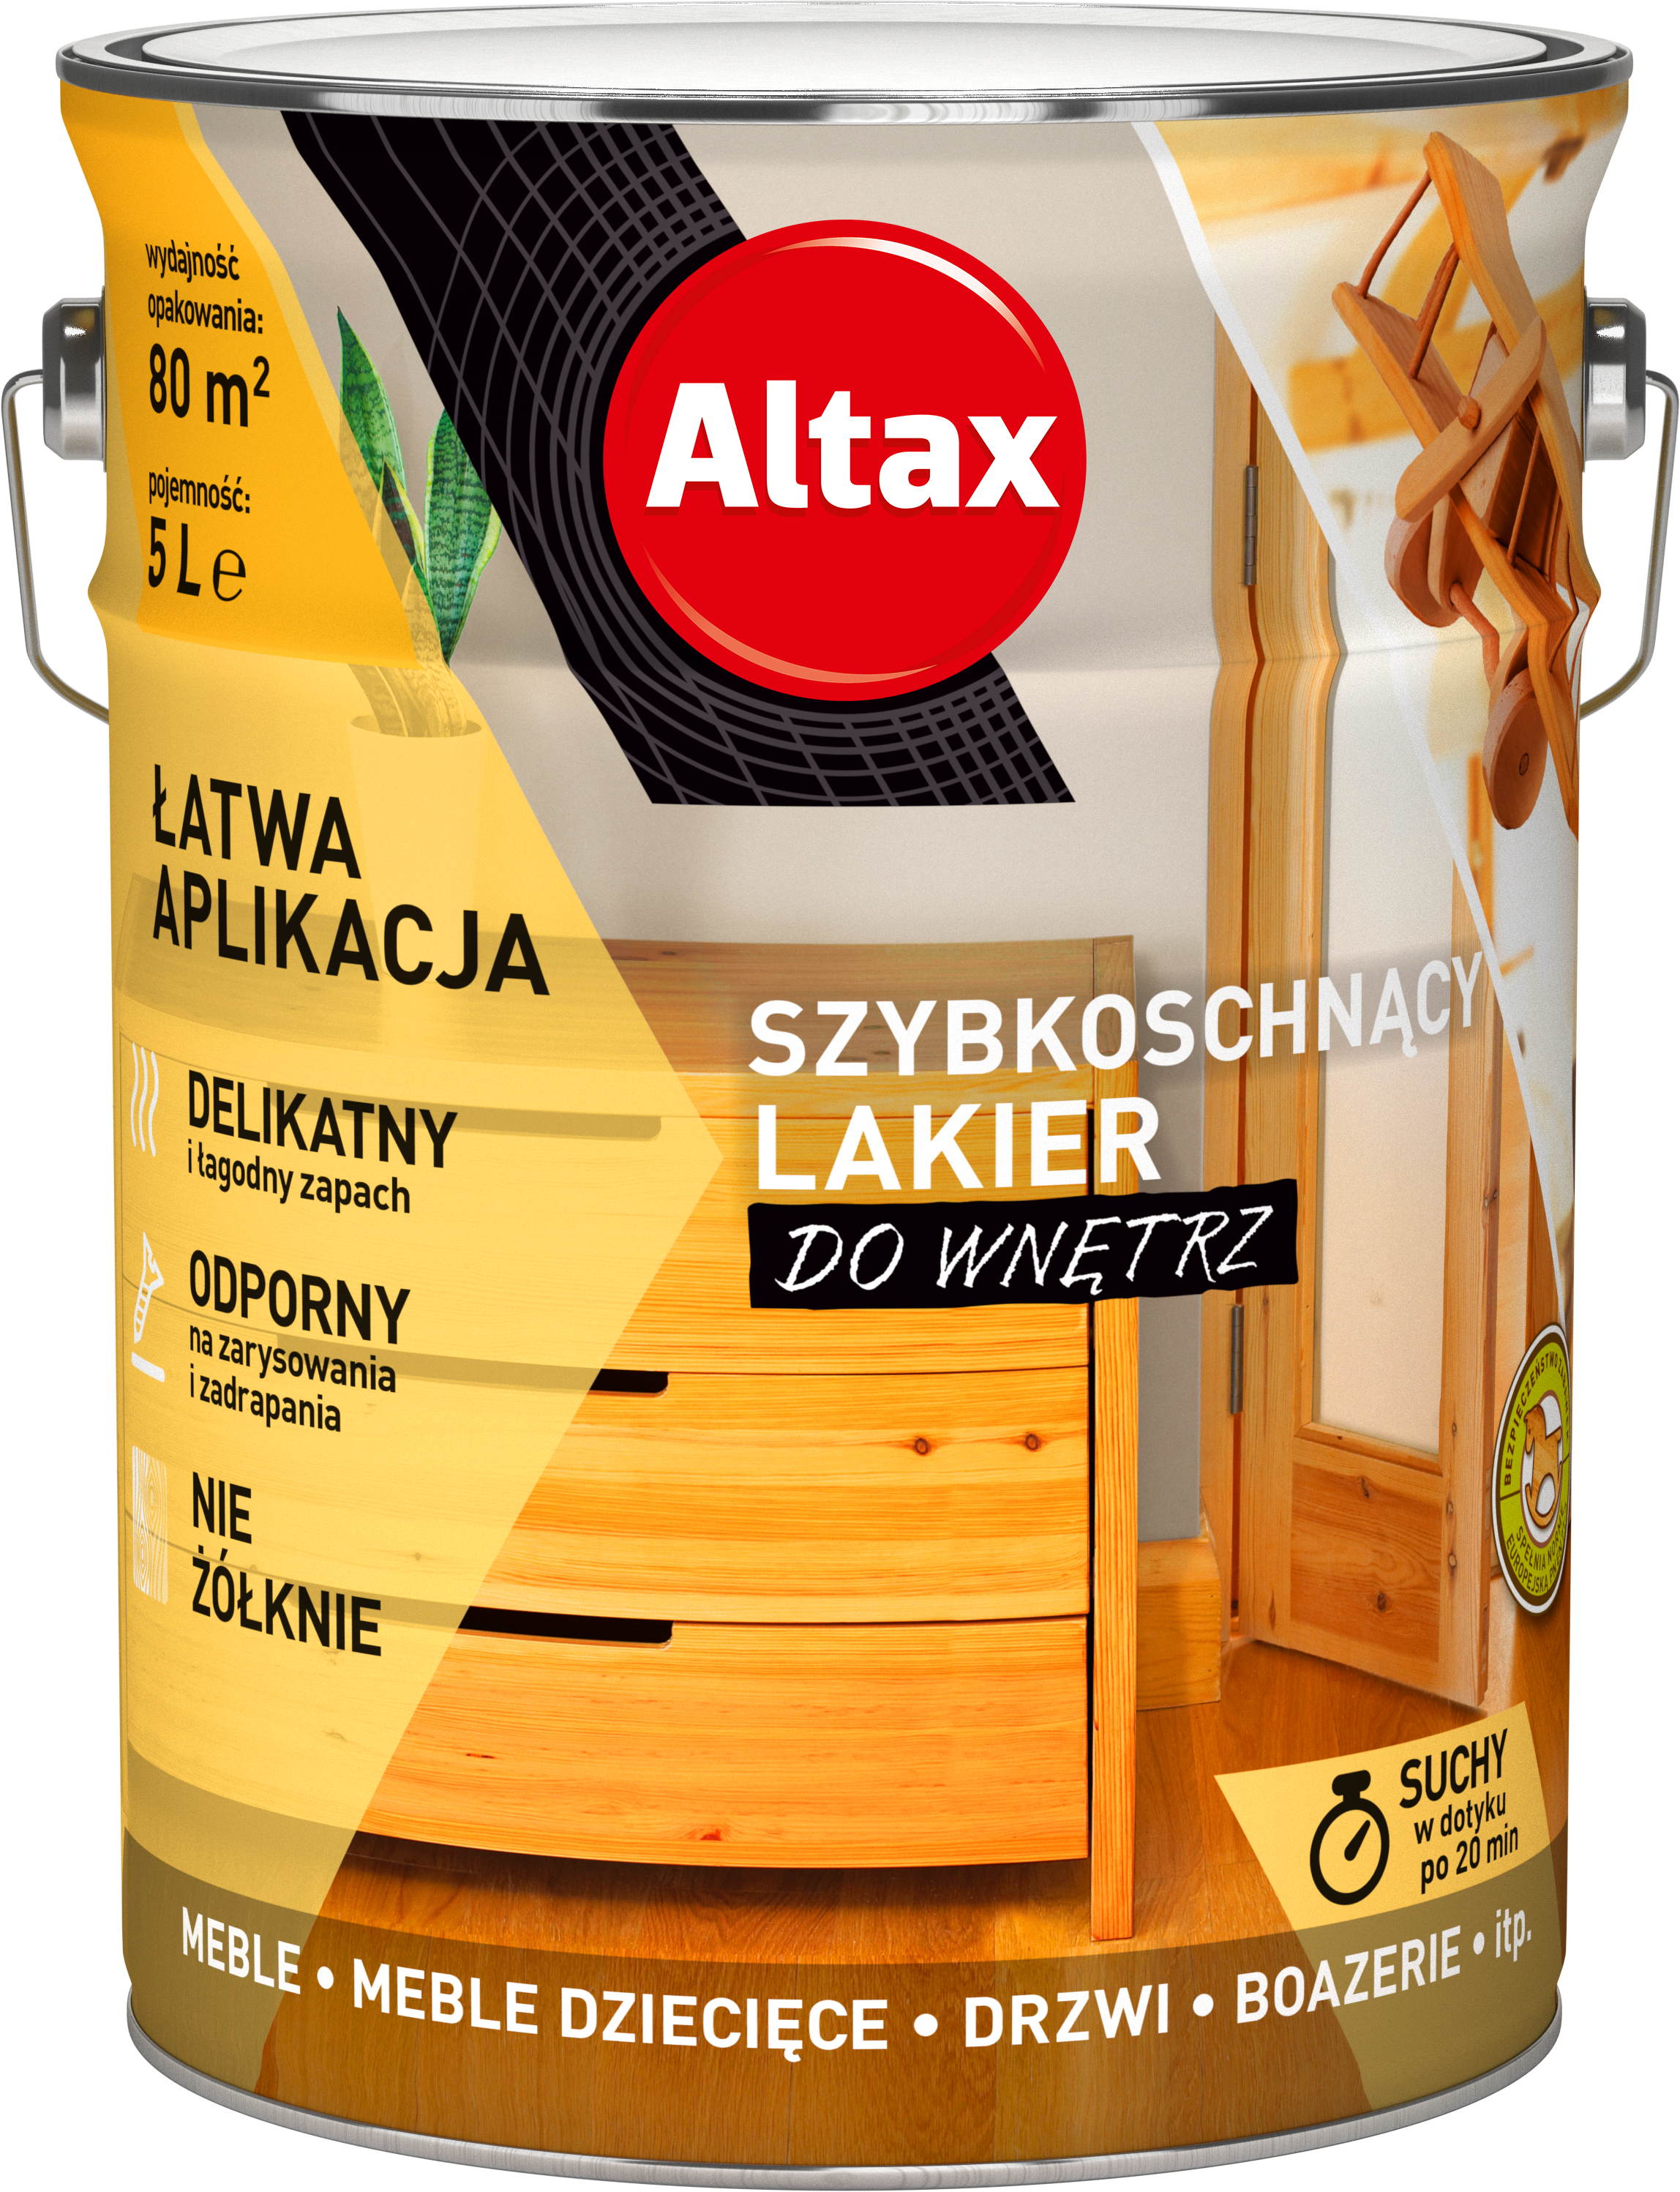 ALTAX-szybkoschnacy-lakier-do-wnetrz-5L-01